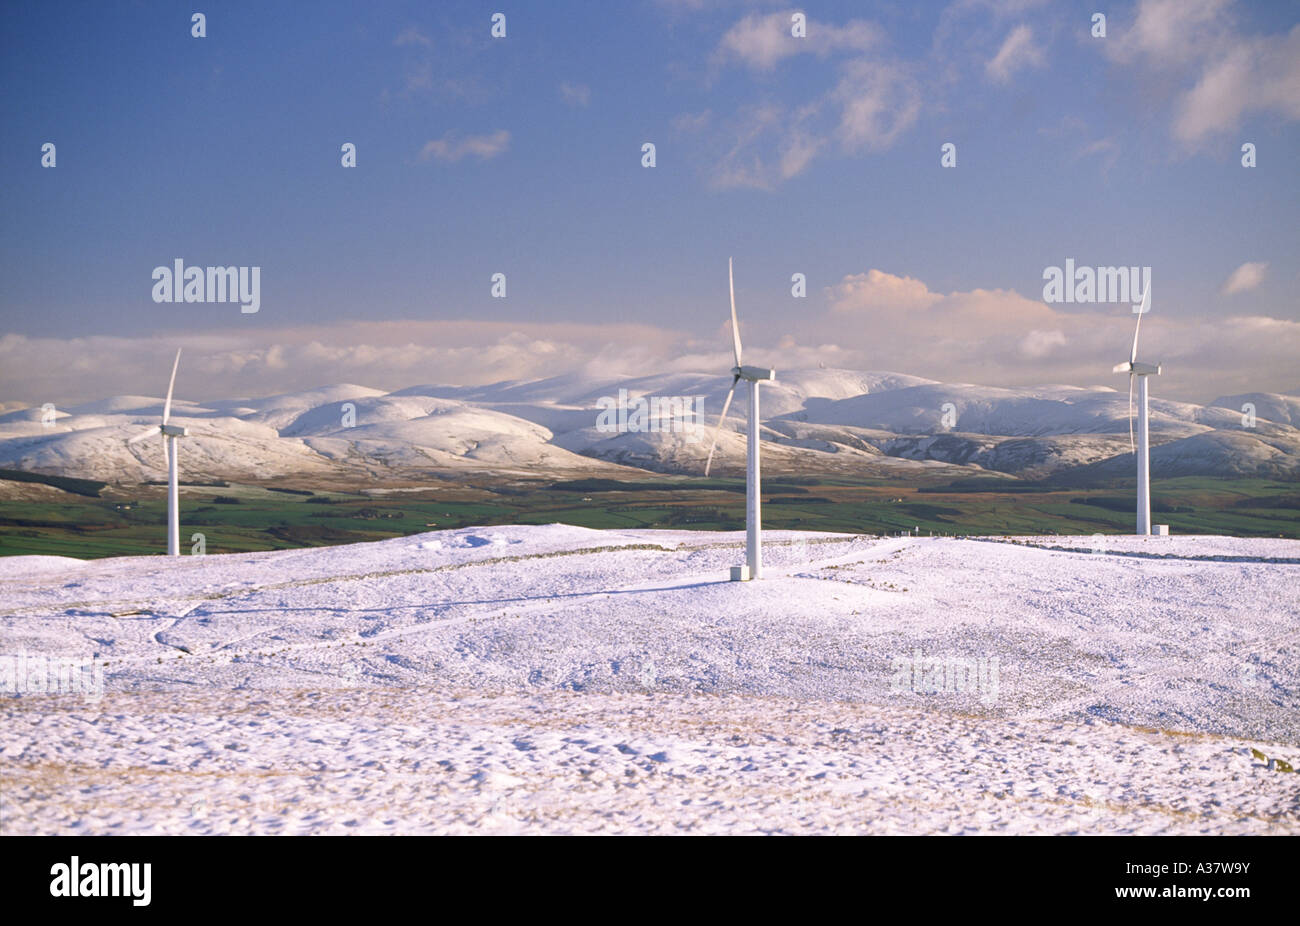 La neige a couvert un paysage d'hiver lorsque l'approvisionnement en électricité est en forte demande éoliennes produisant de l'électricité Hare Hill UK Banque D'Images